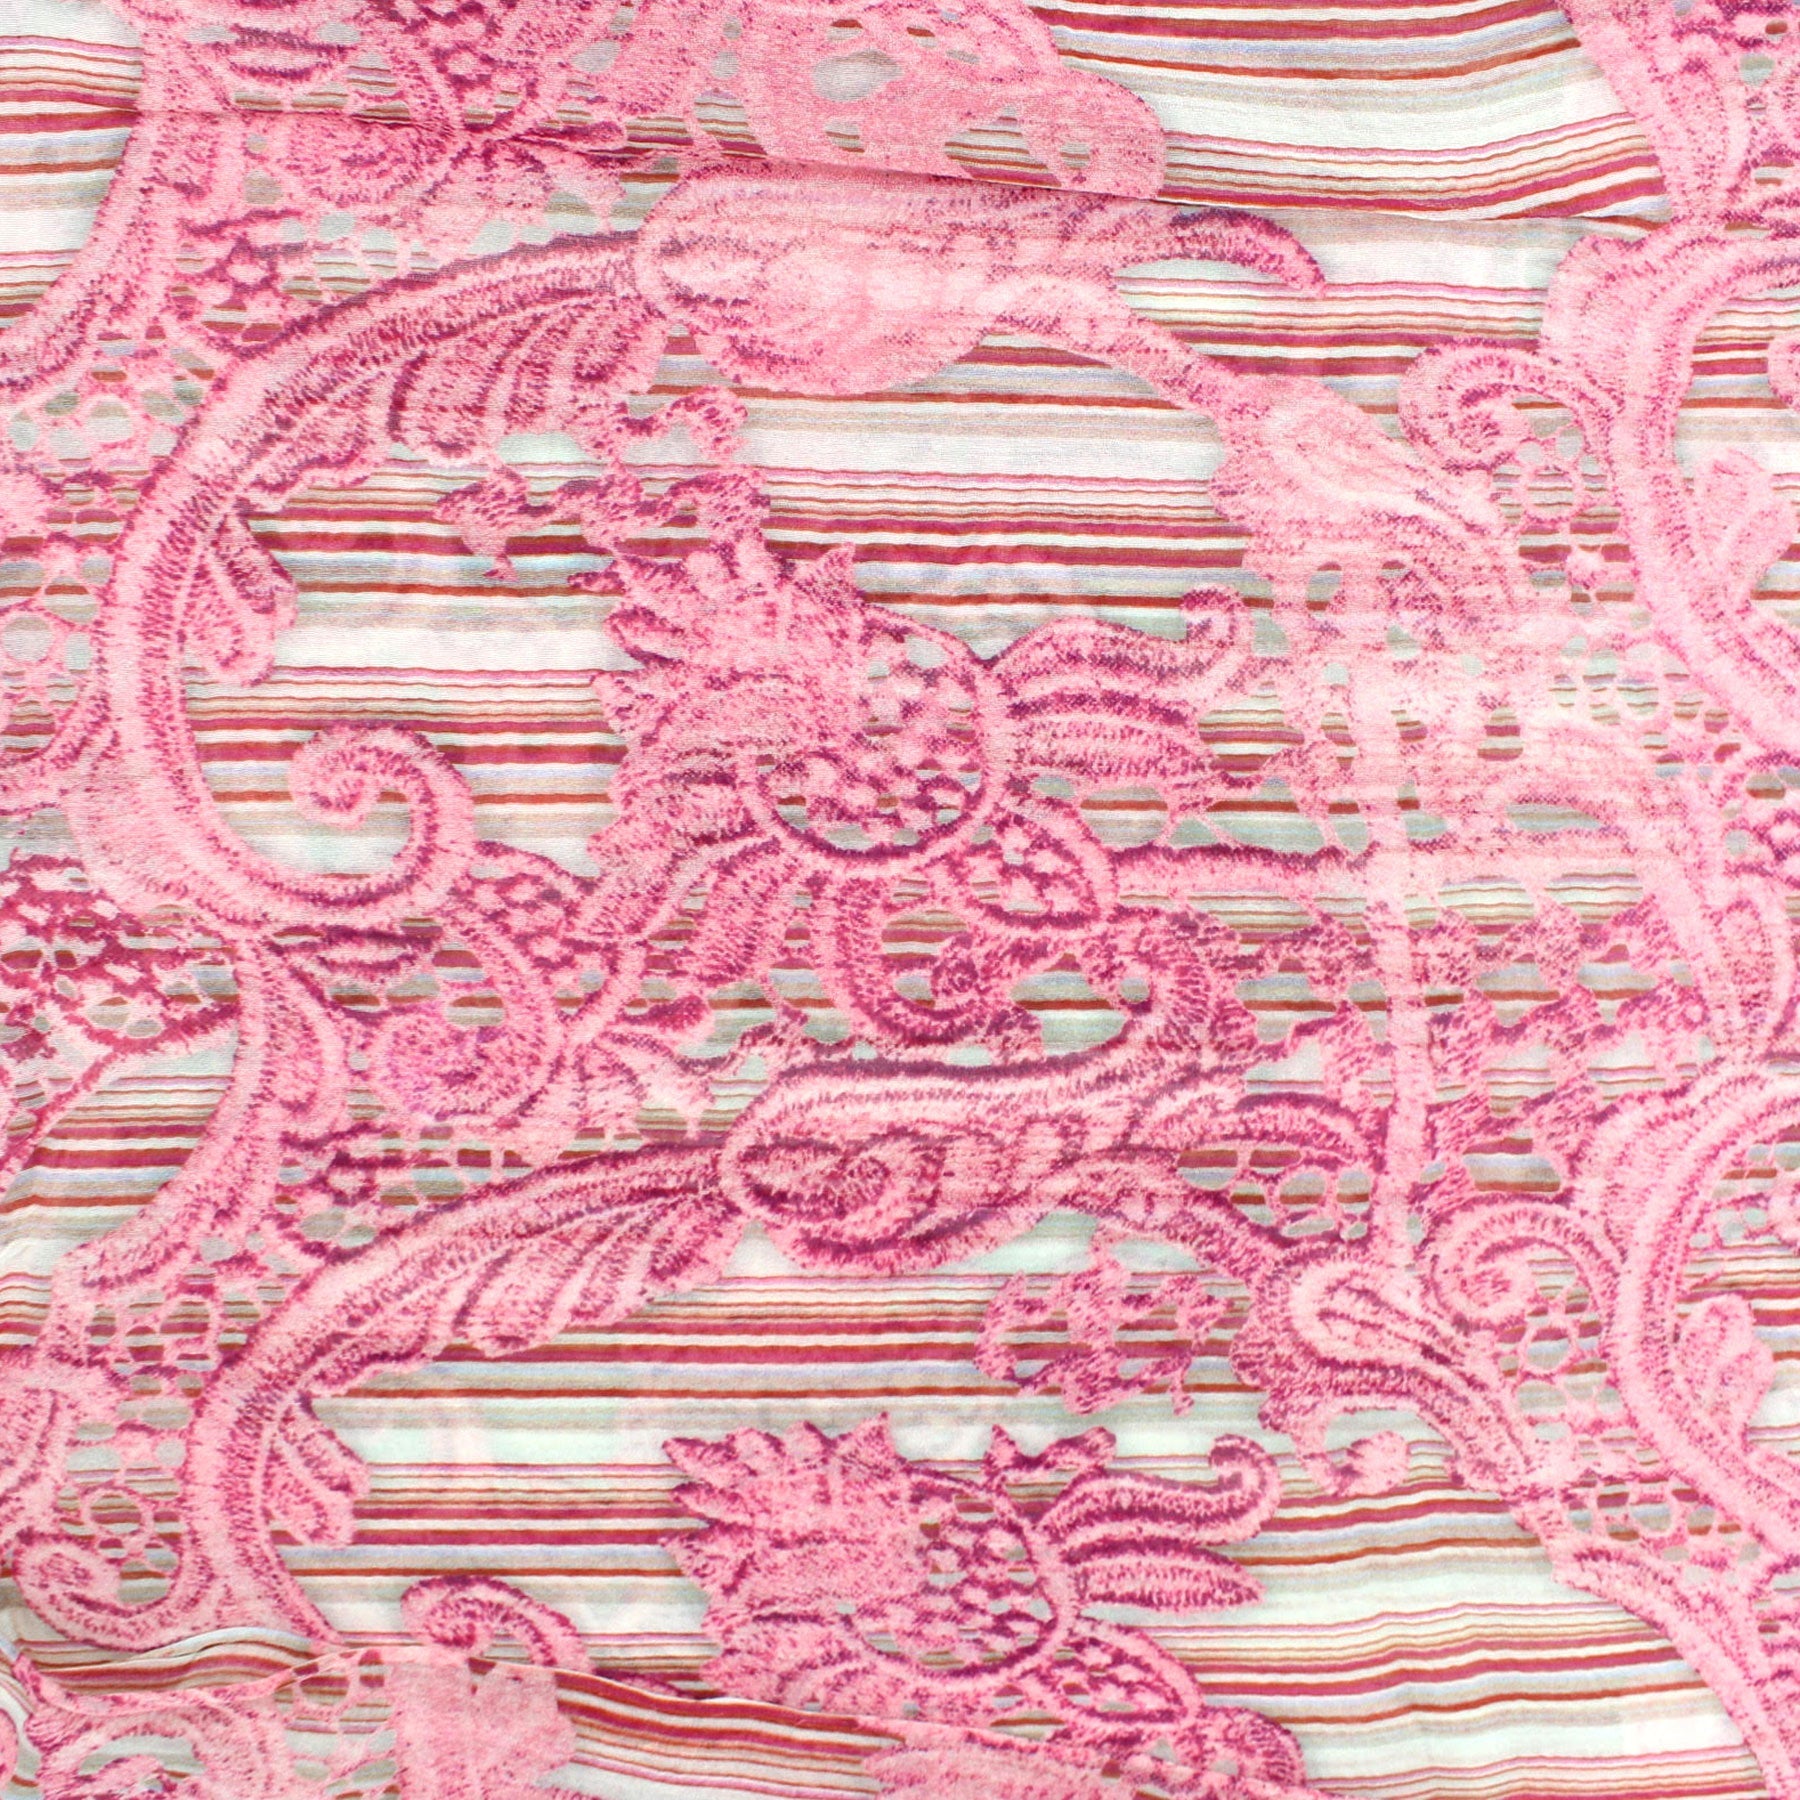 Ermanno Scervino Scarf Taupe Pink Stripes Ornamental Design - Cotton Silk Shawl